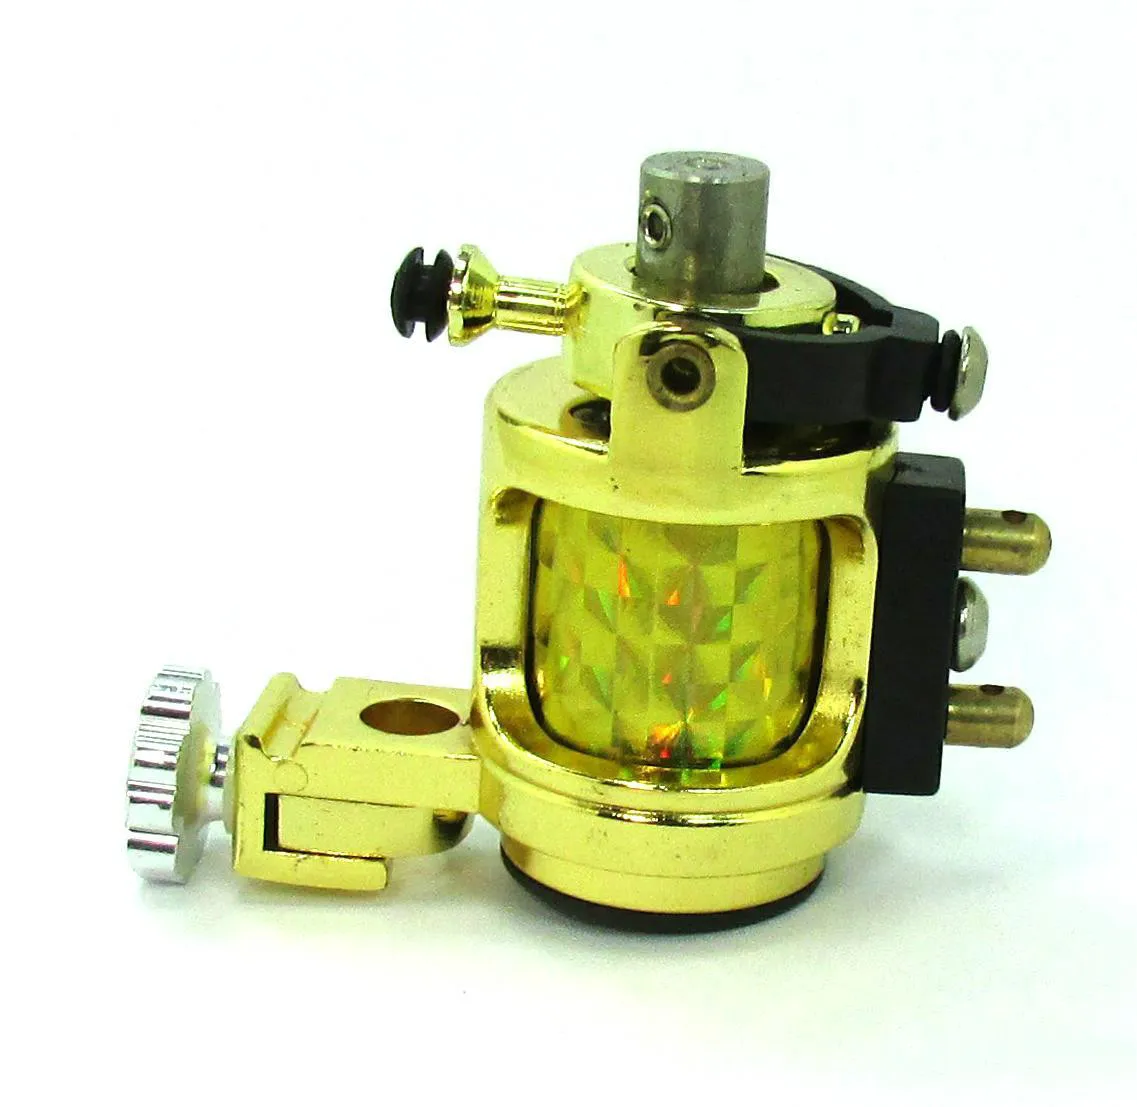 Yeni Tasarım Hafif Sessiz Altın Motor Döner Dövme Makinesi Swashdrive El Yapımı Pürüzsüz 6370576